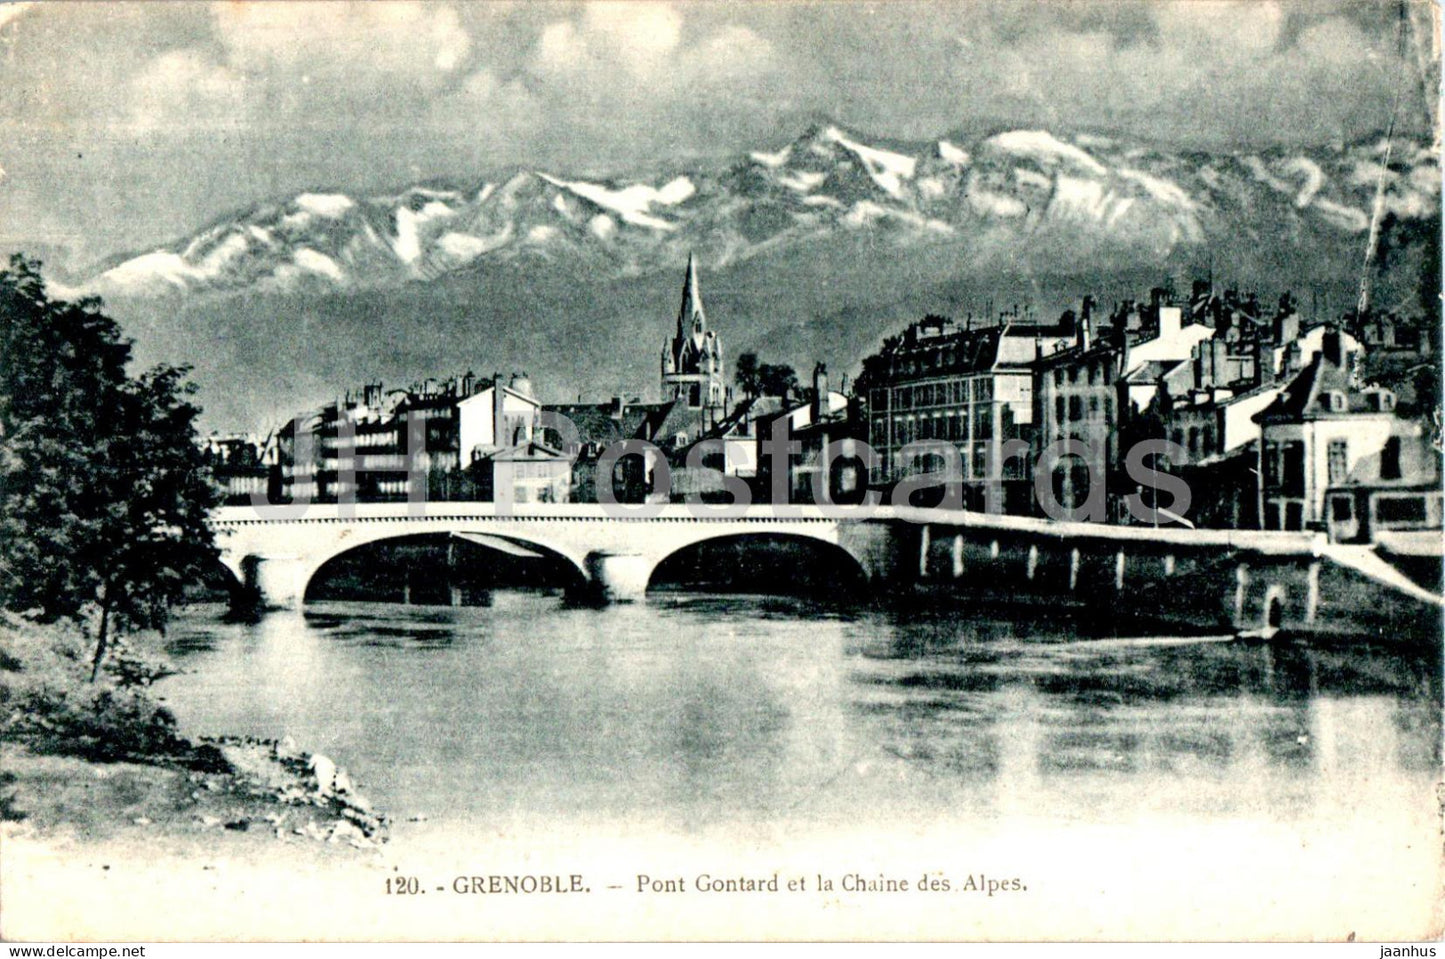 Grenoble - Pont Gontard et la Chaine des Alpes - 120 - old postcard - France - unused - JH Postcards